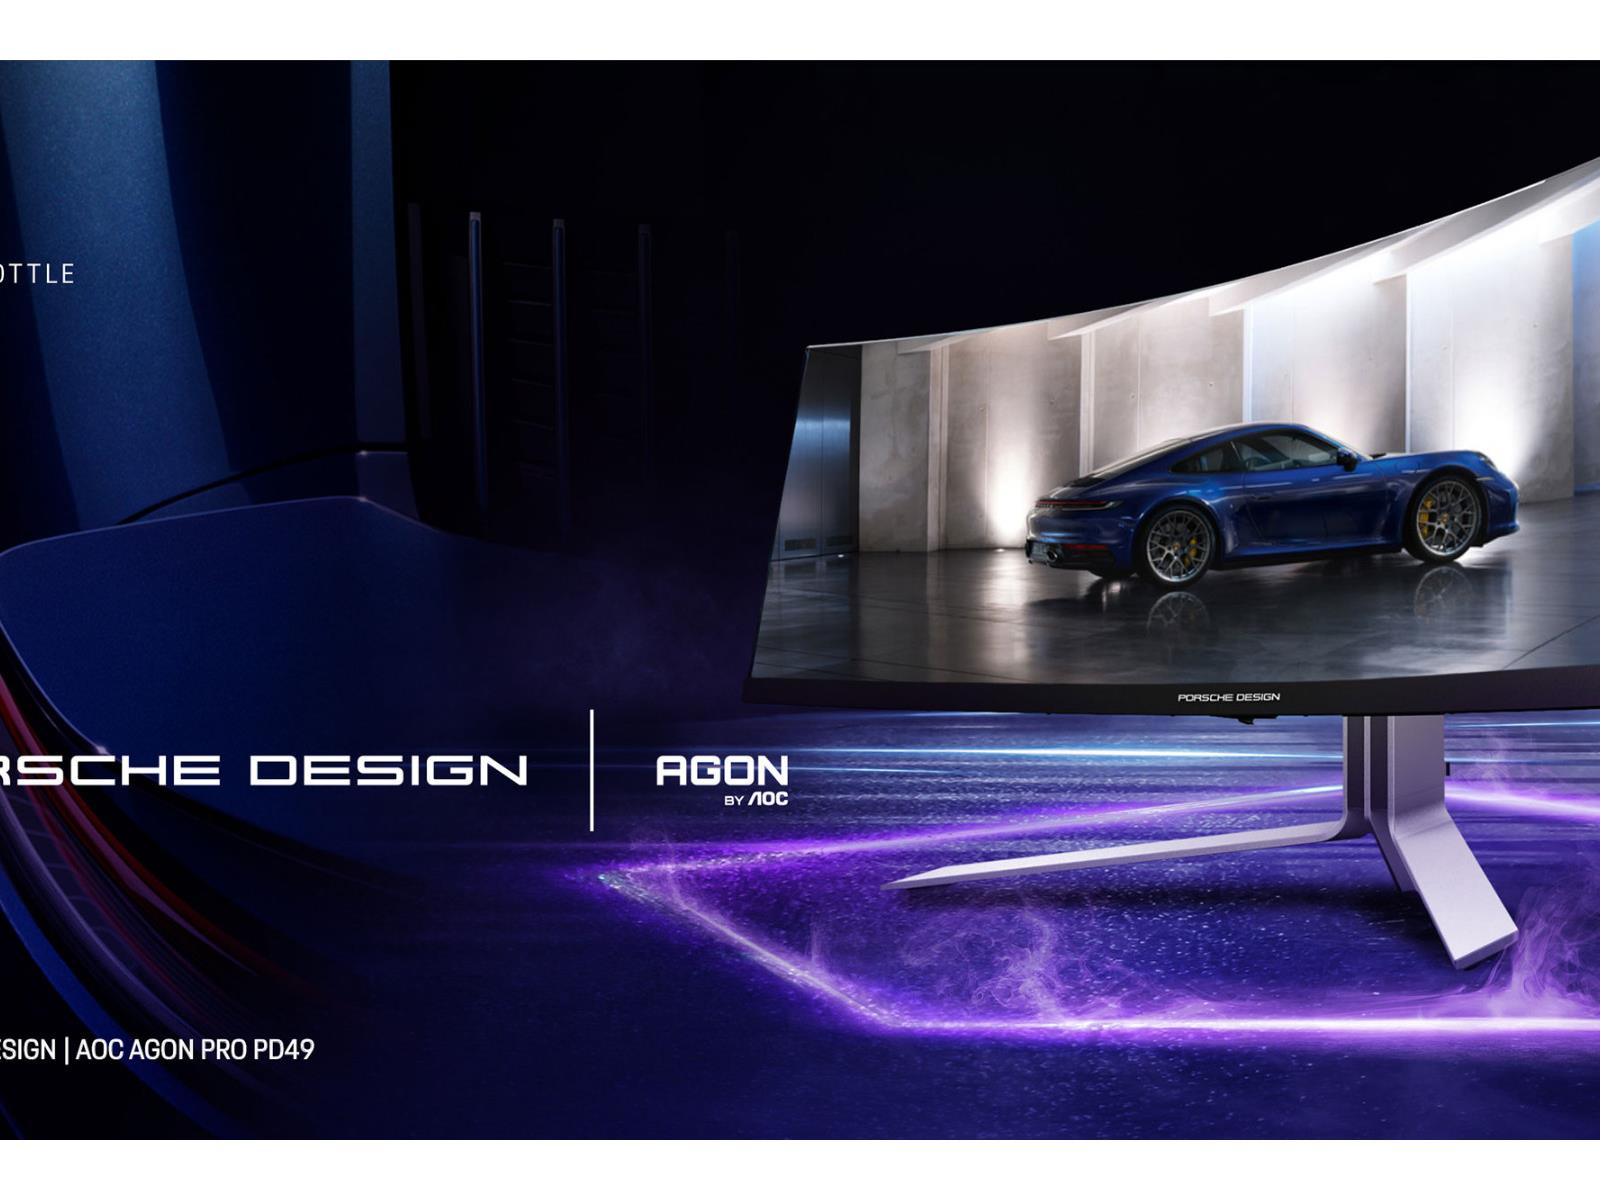 Porsche Design releases a massive 49 OLED monitor with AOC - Acquire